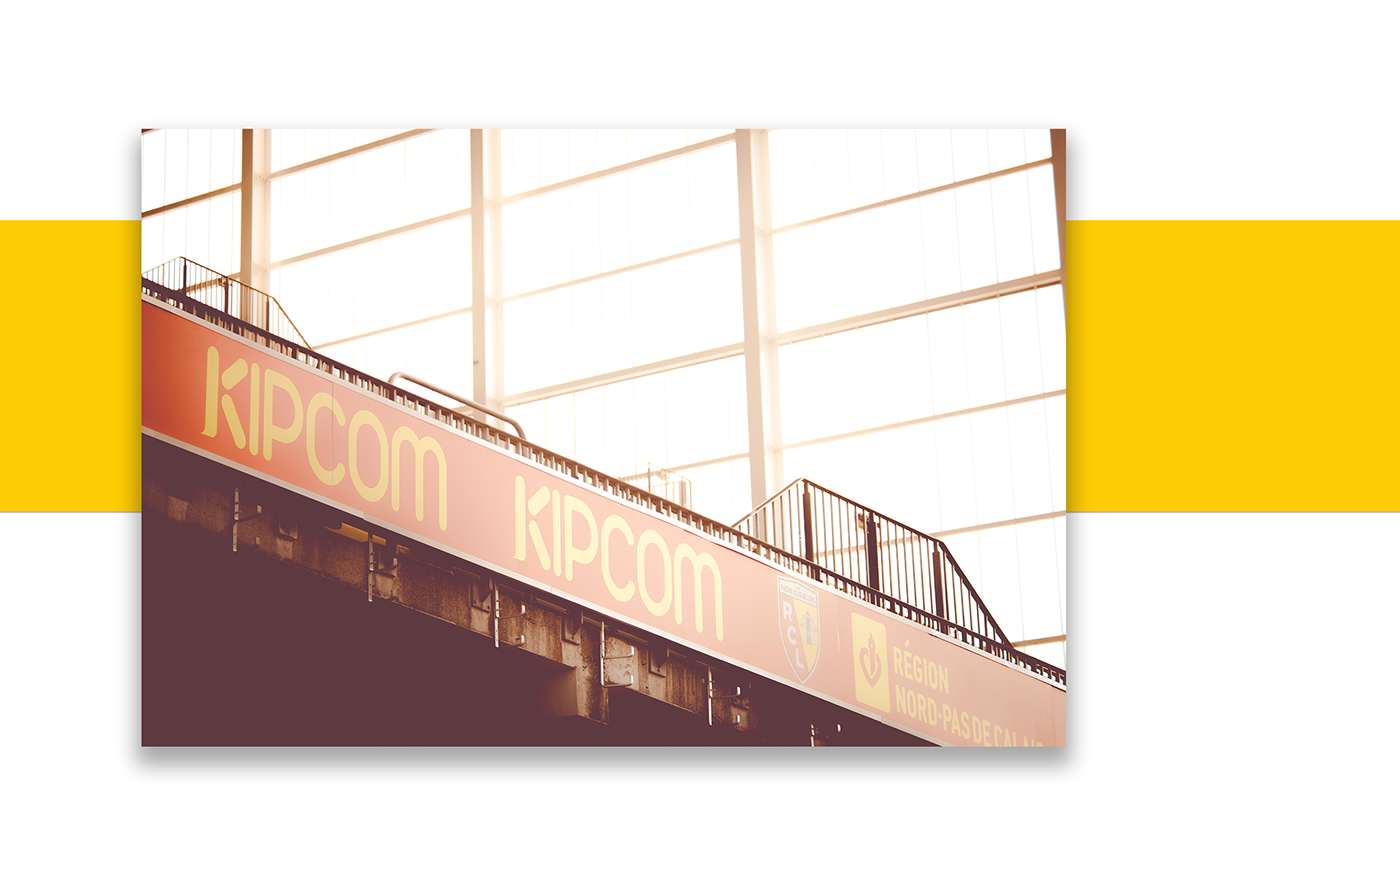 kipcom company studio creation design sport signalétique brand branding 